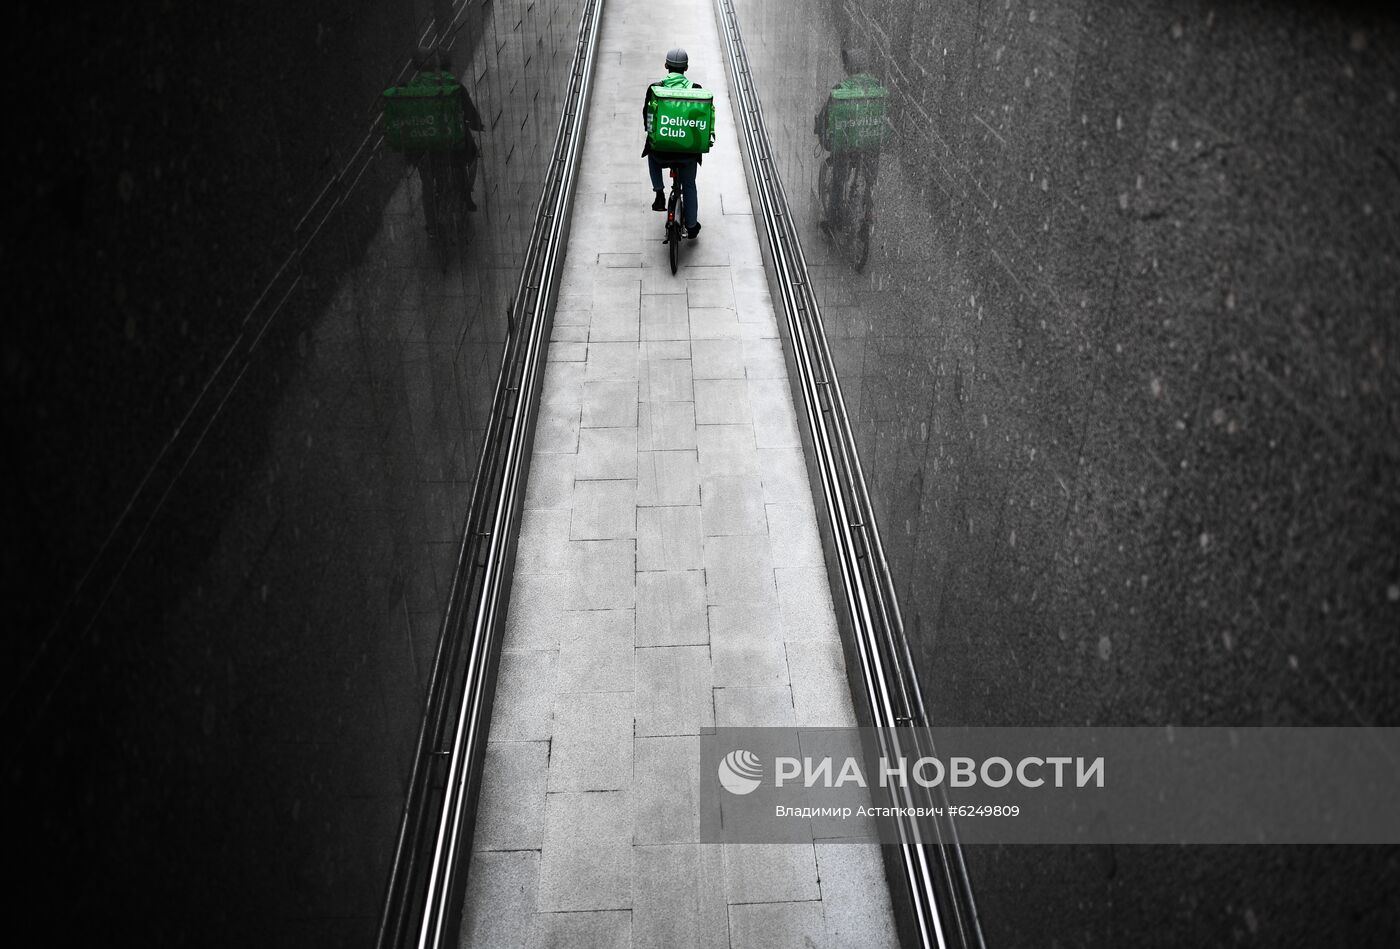 Москва во время режима самоизоляции жителей